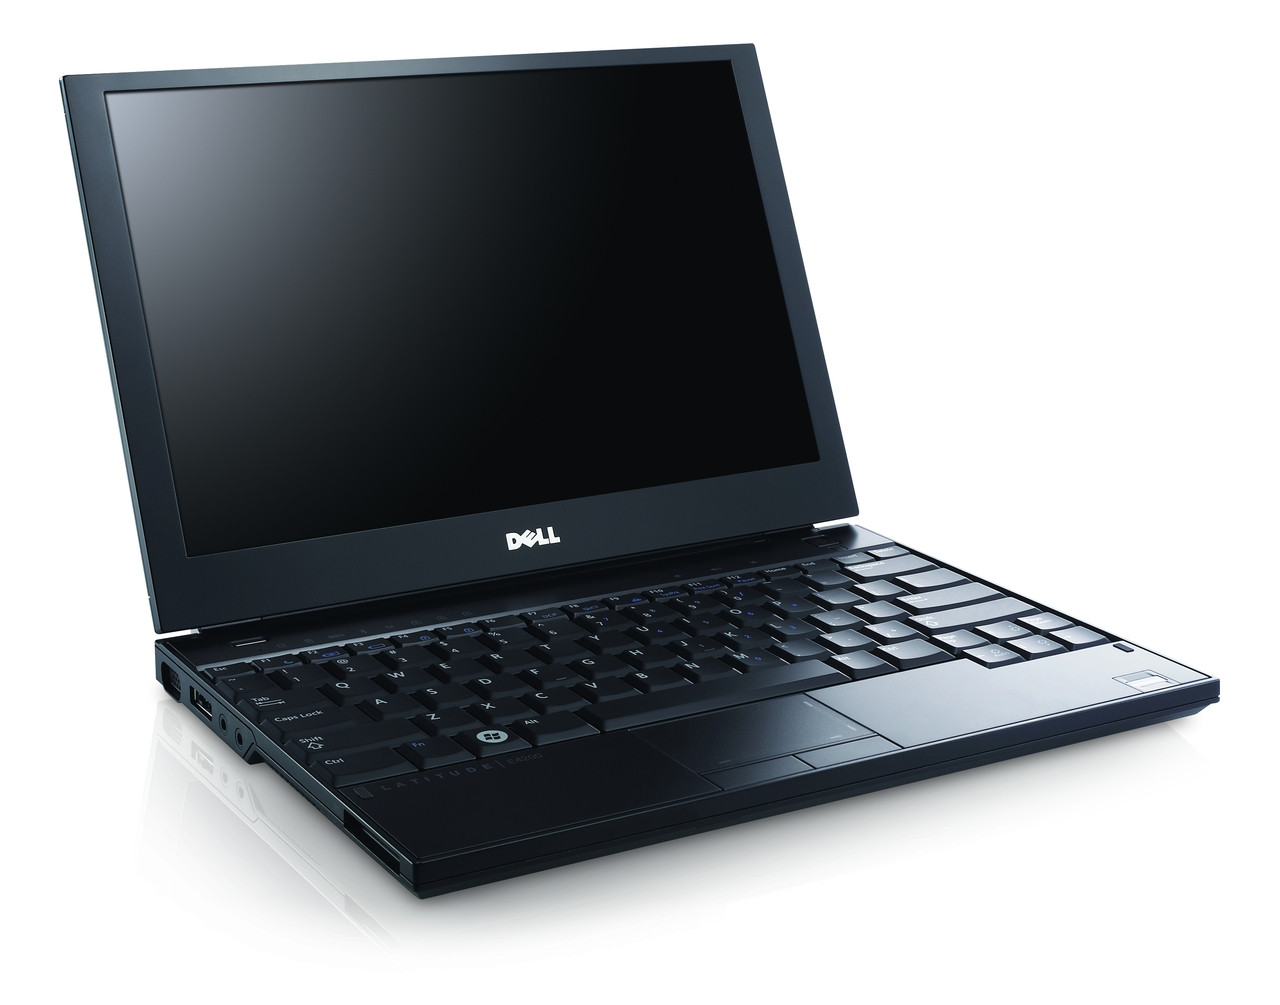 Refurbished Dell Latitude E4200 Core 2 Duo laptop